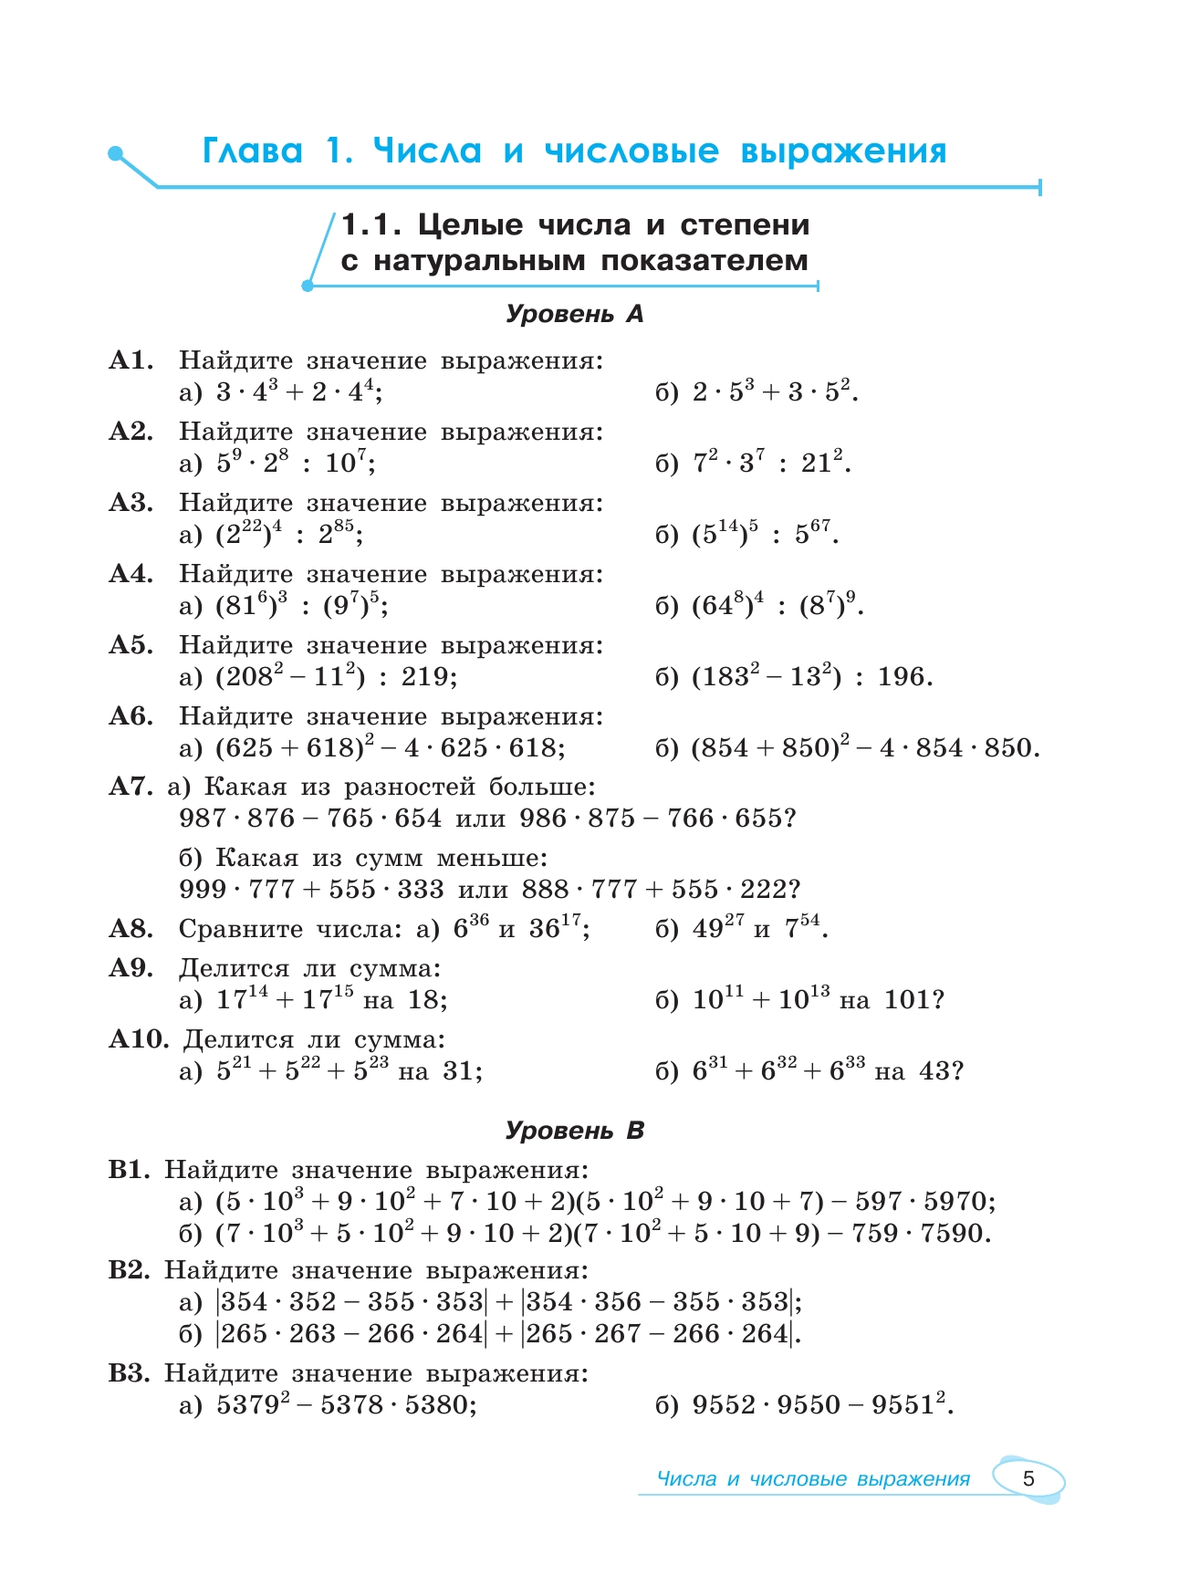 Алгебра и начала математического анализа. Универсальный многоуровневый сборник задач. 10-11 классы 7